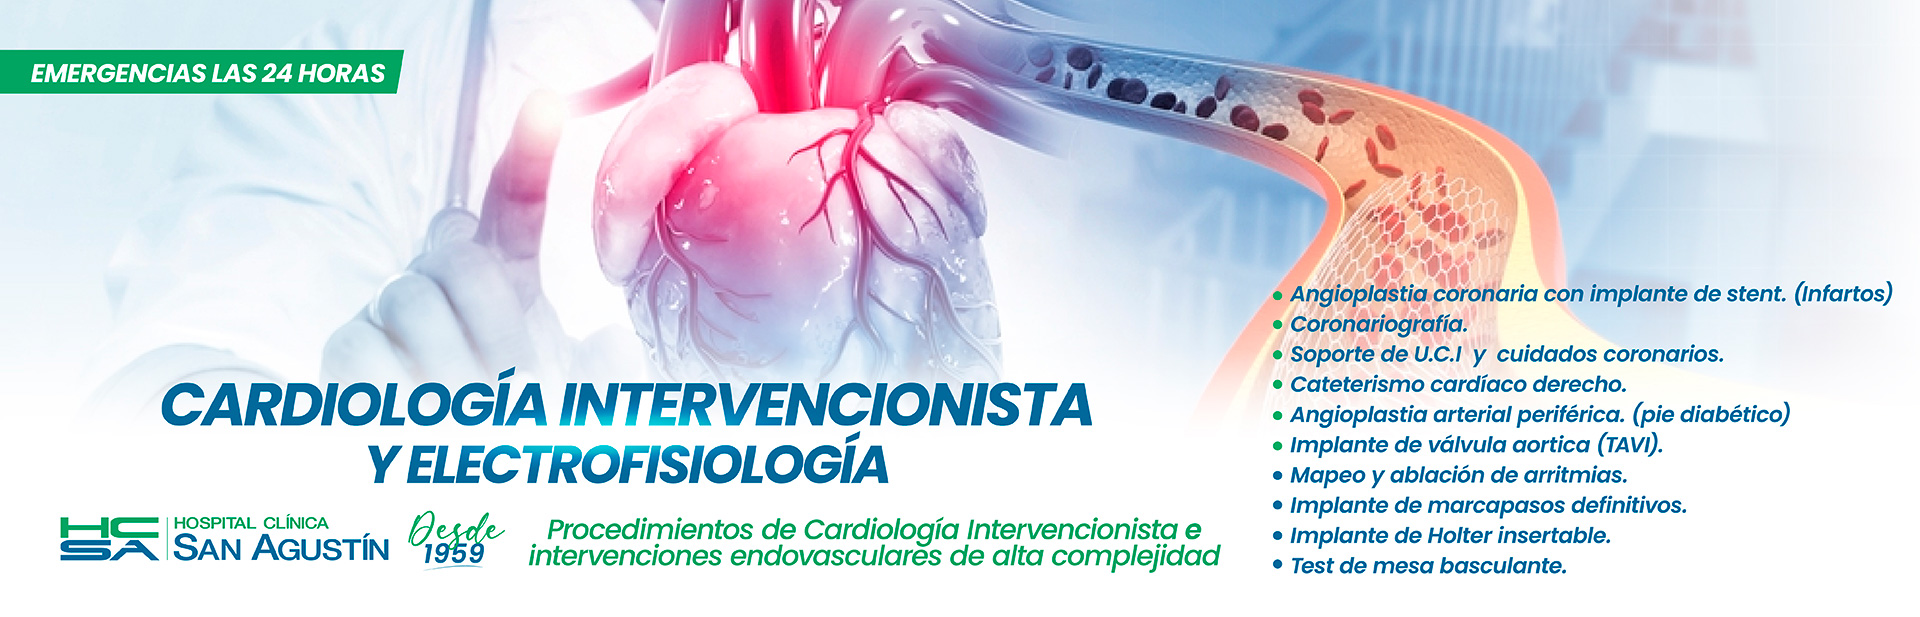 Cardiología Intervencionista y electrofisiología | Hospital Clínica San Agustín